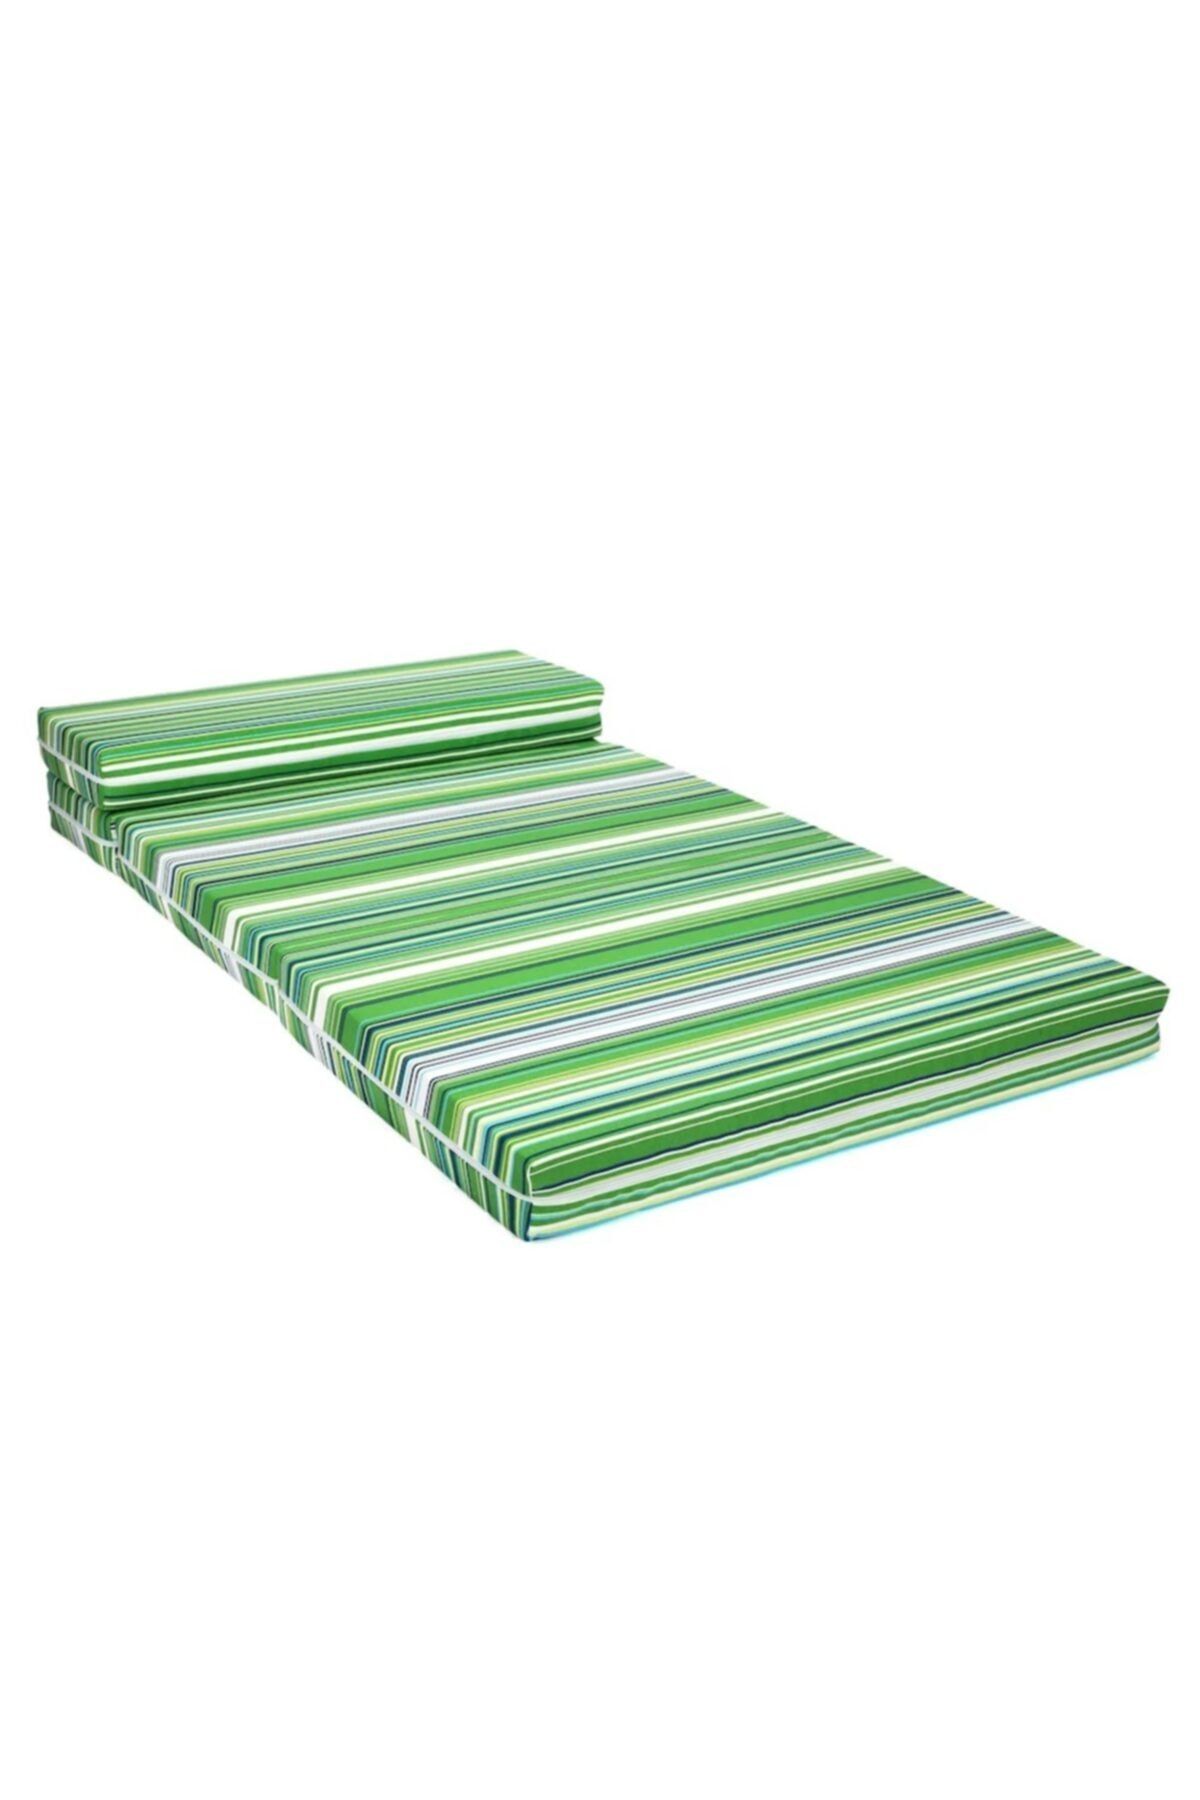 Sluupy Yeşil Katlanır Yatak 120x200 cm 4 Parça